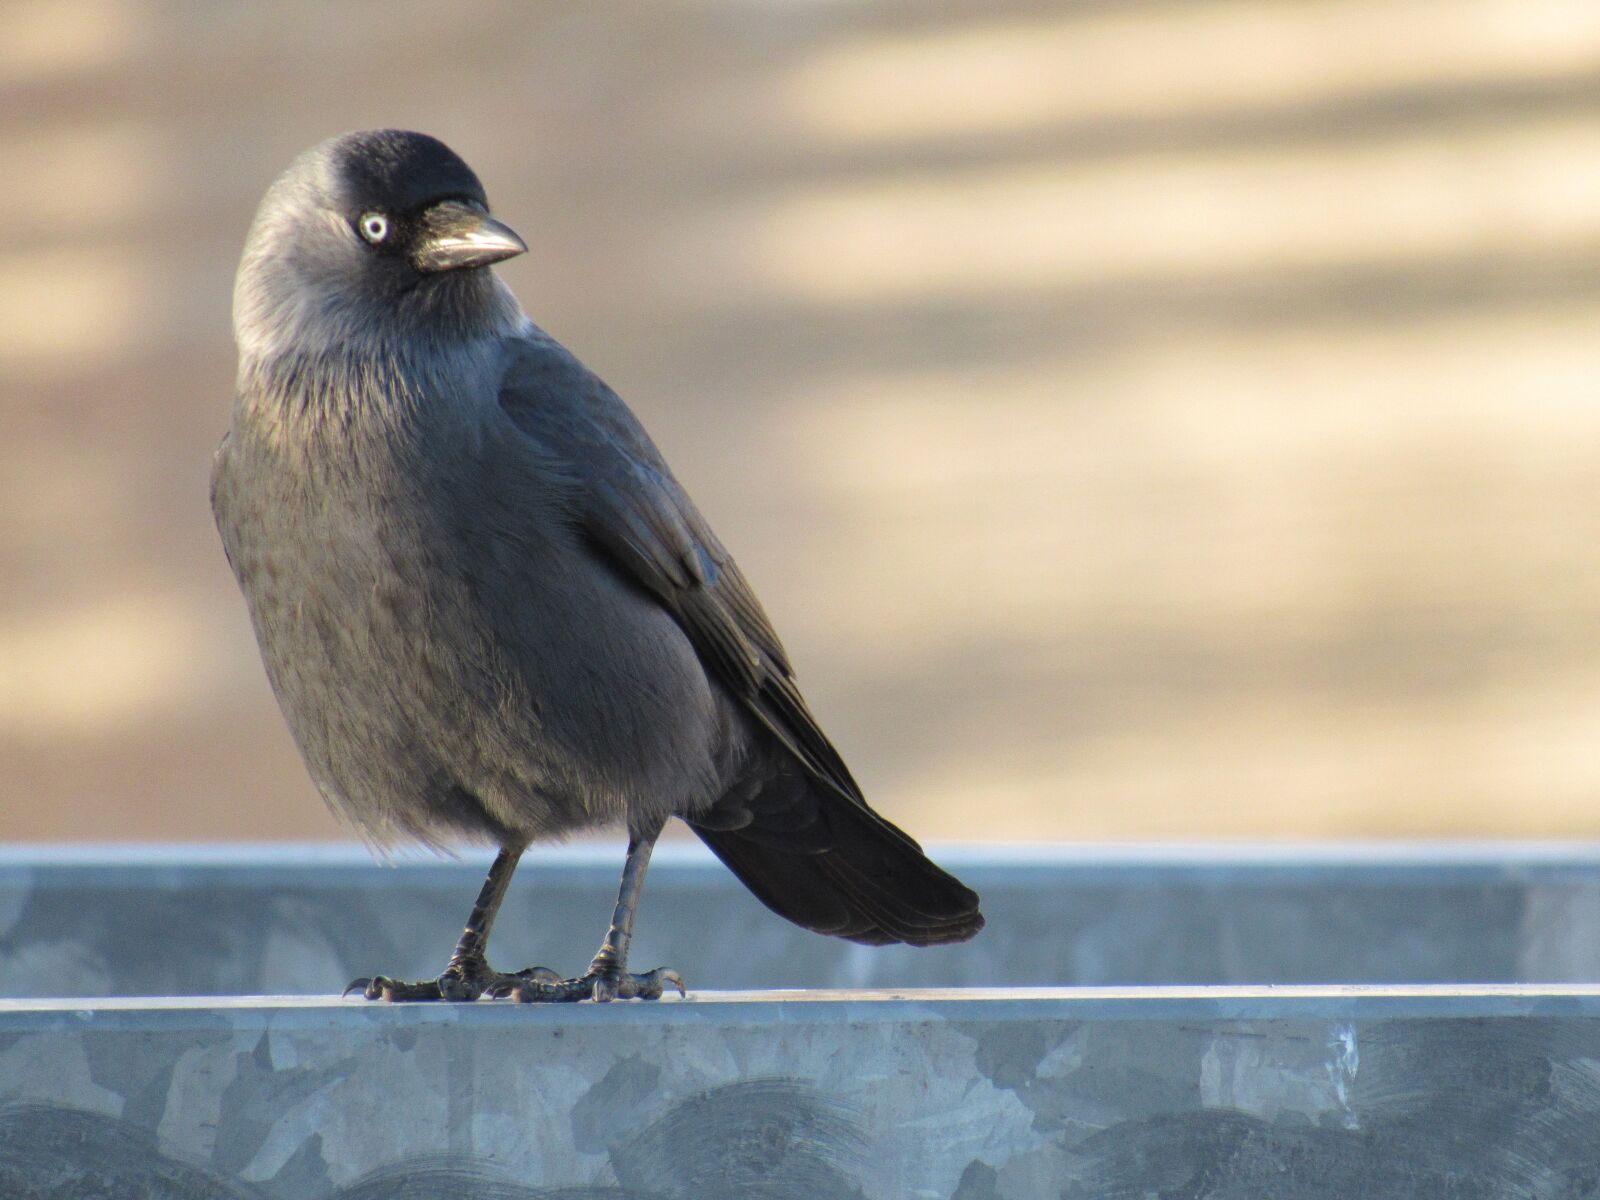 Не замеченная серая птичка выпорхнула из кустов. Галка (Corvus monedula). Серая Галка птица. Галка обыкновенная. Черная птица с серой головой.